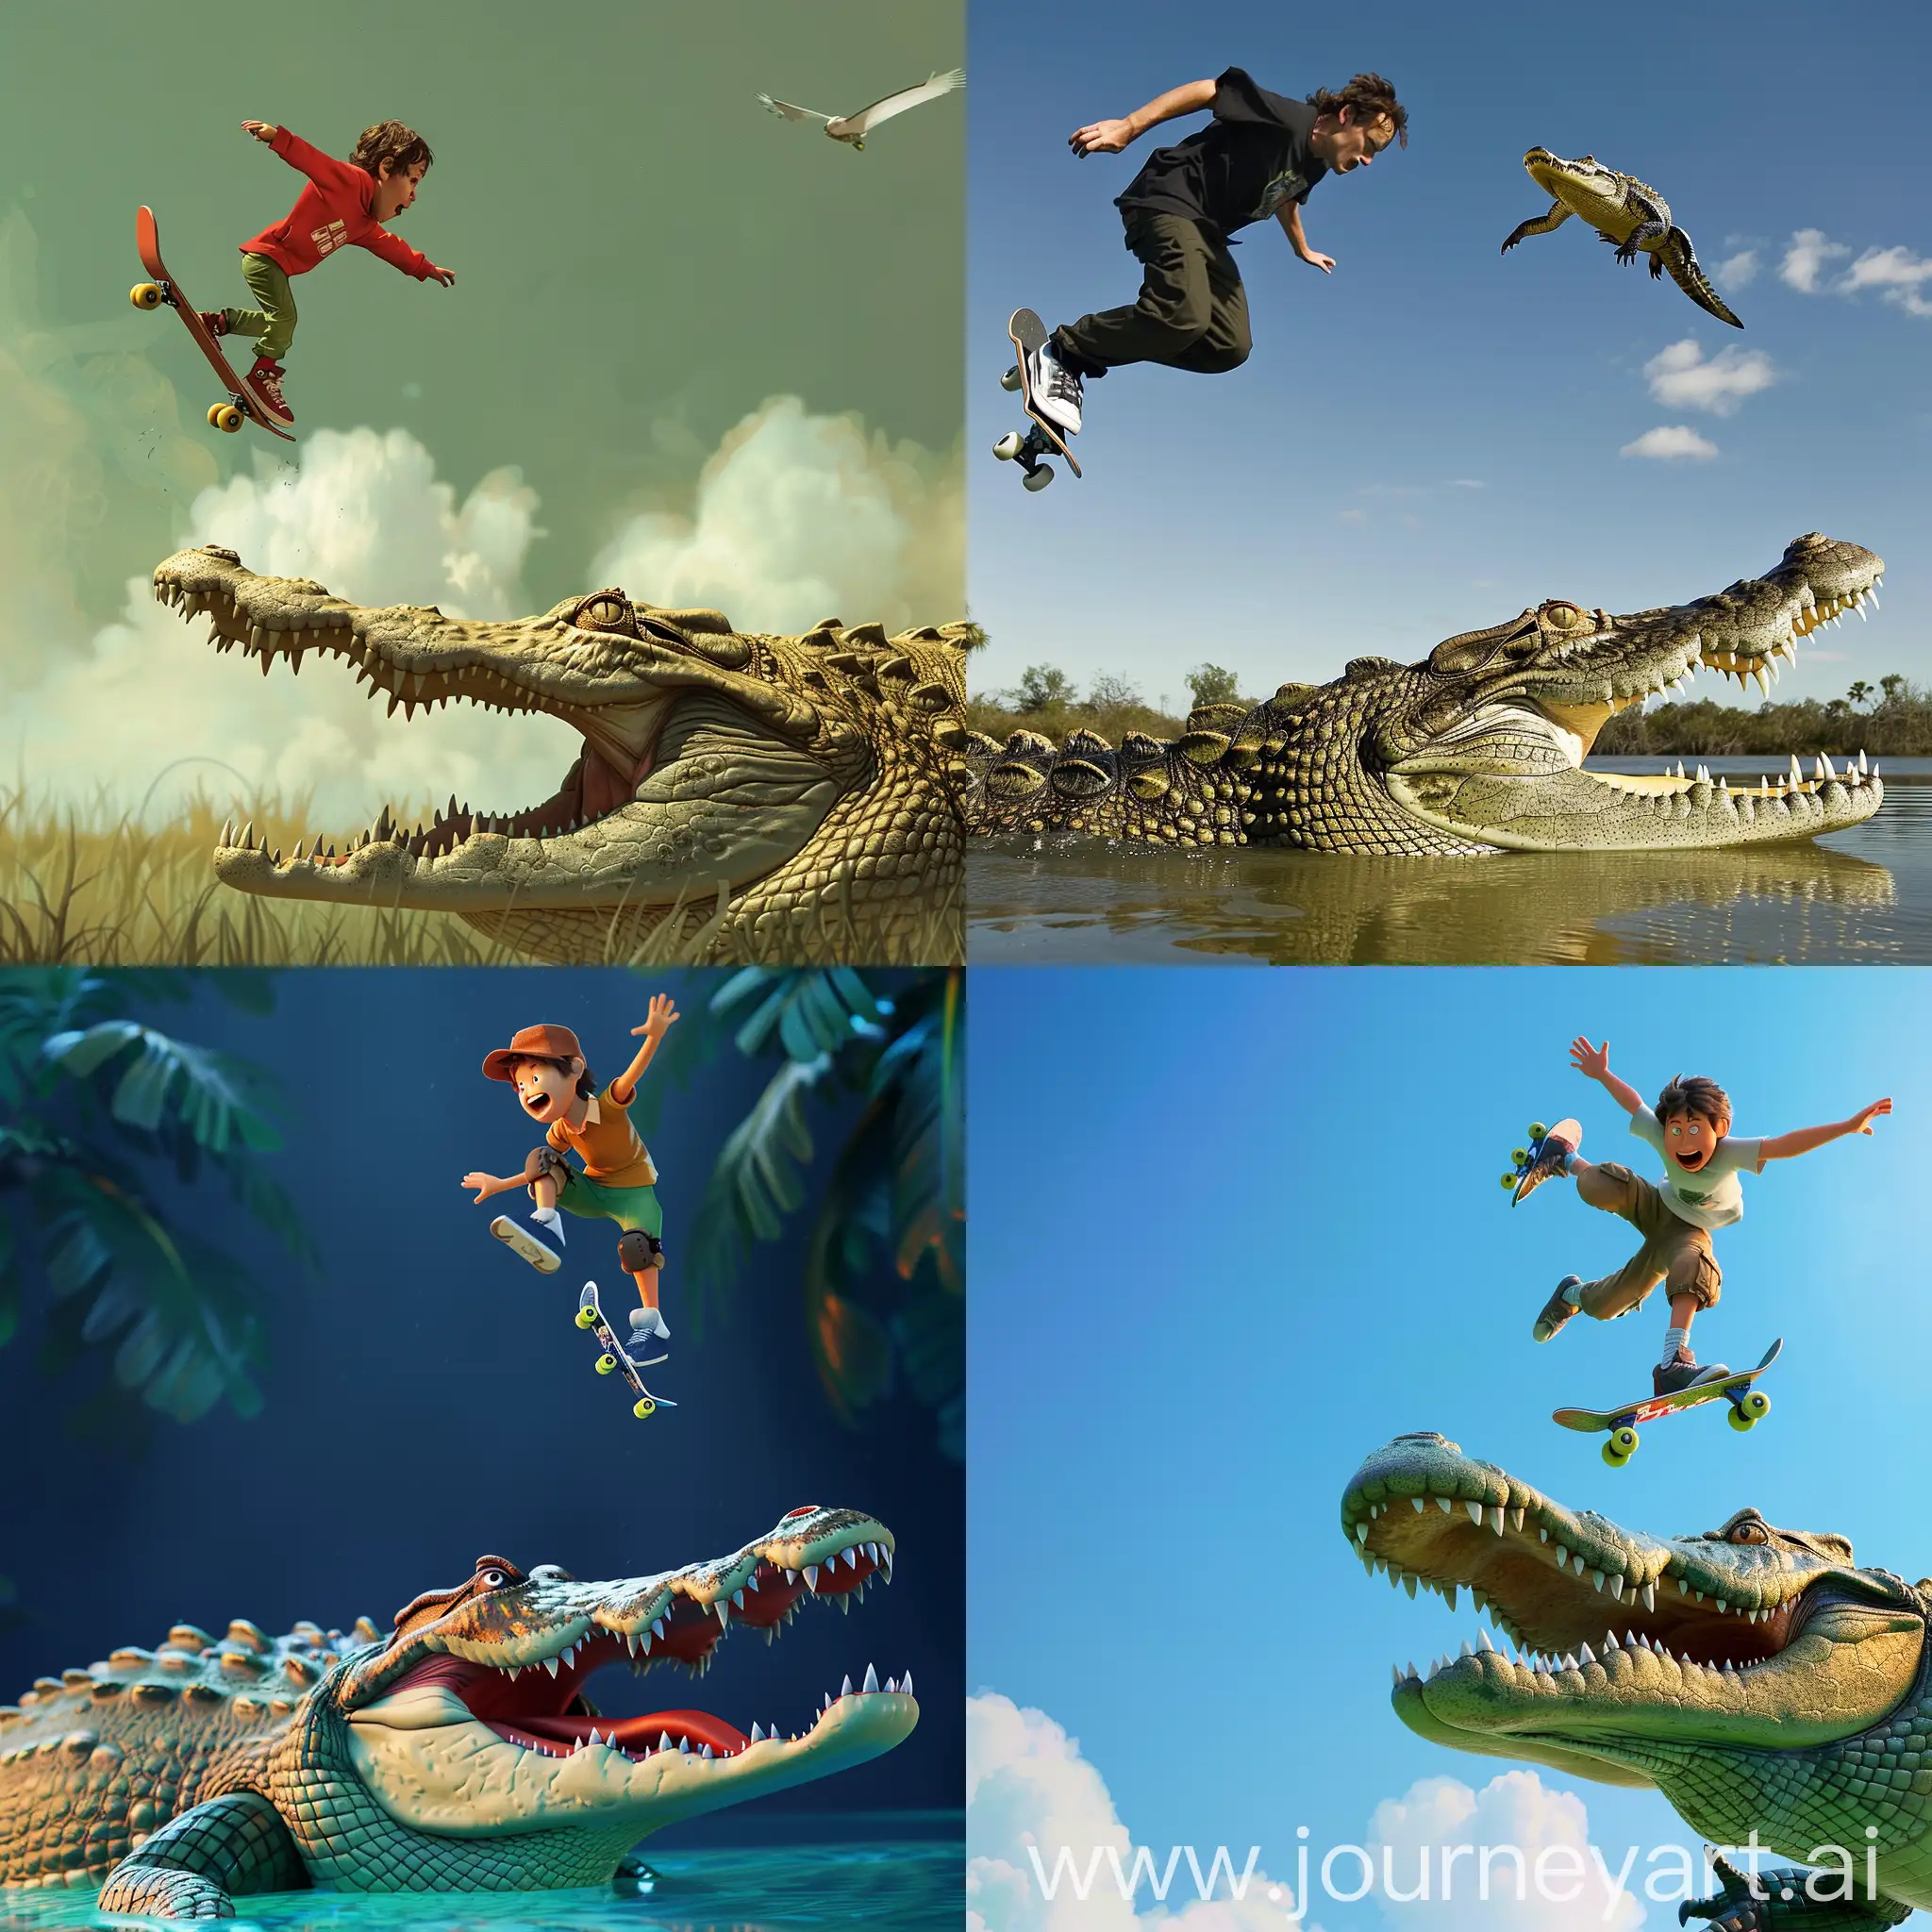 Kick Buttowski jump on skate above crocodile